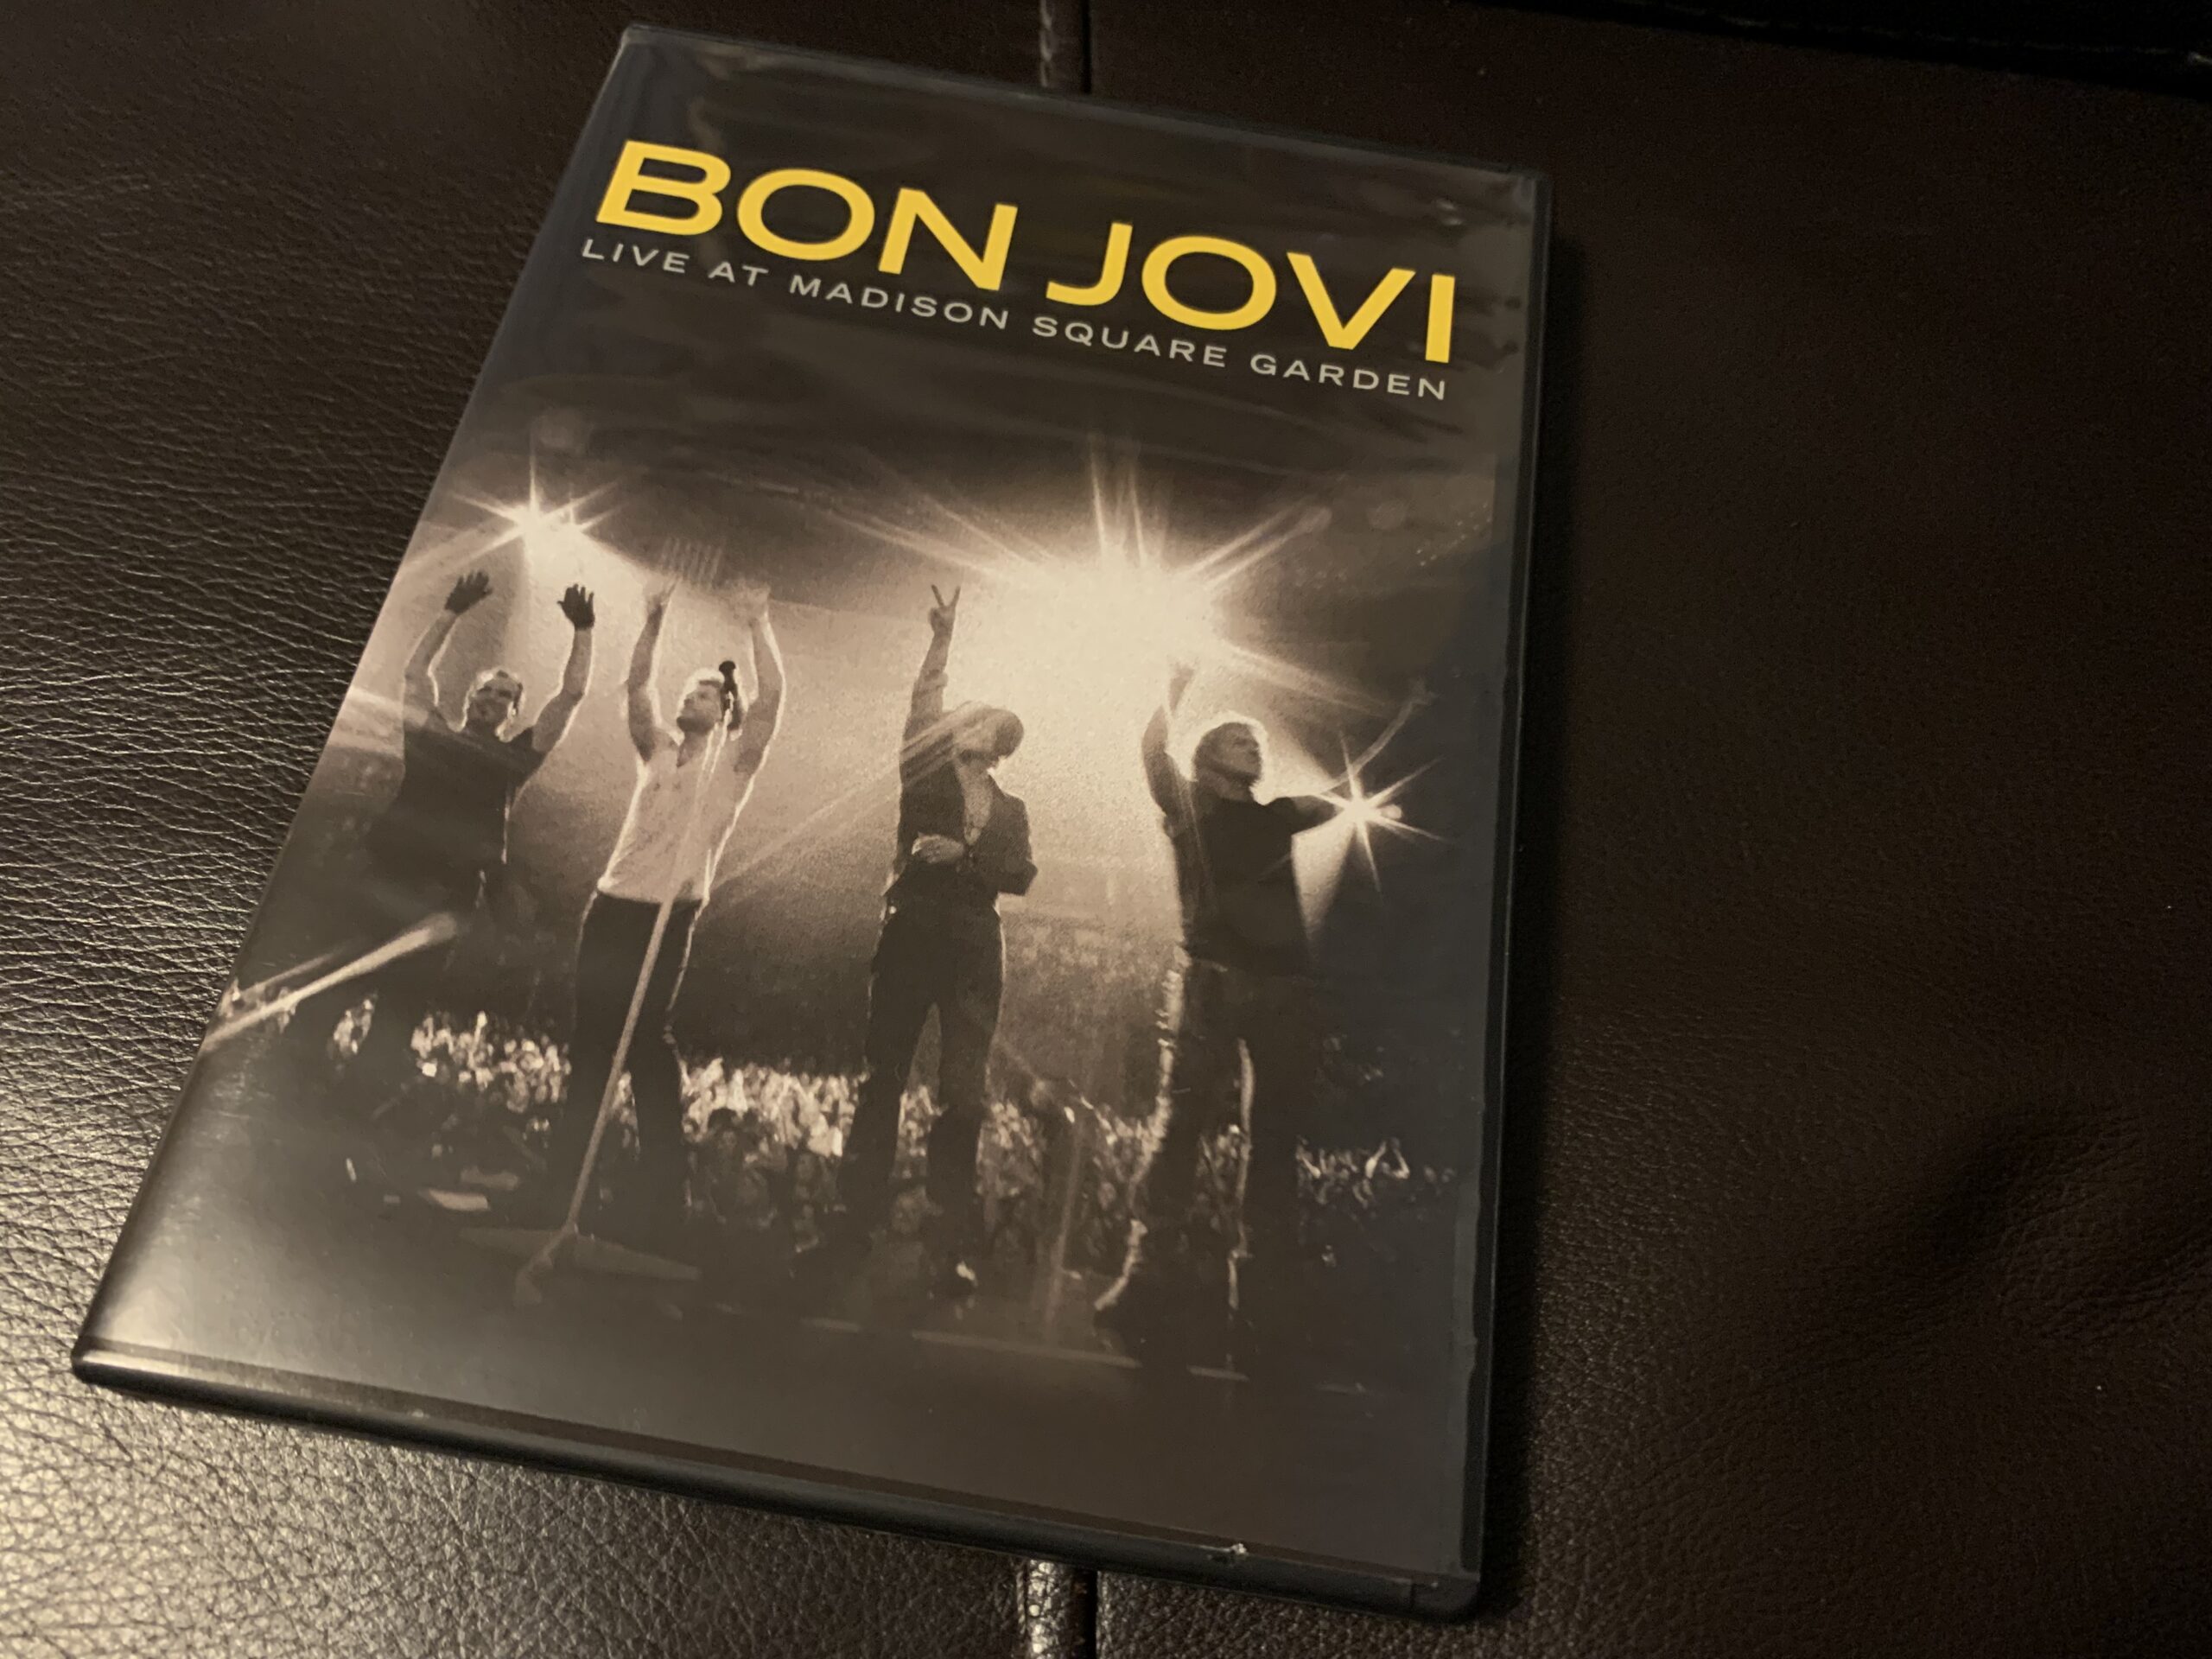 Bon JoviのライブDVD『Live At Madison Square Garden』を買った